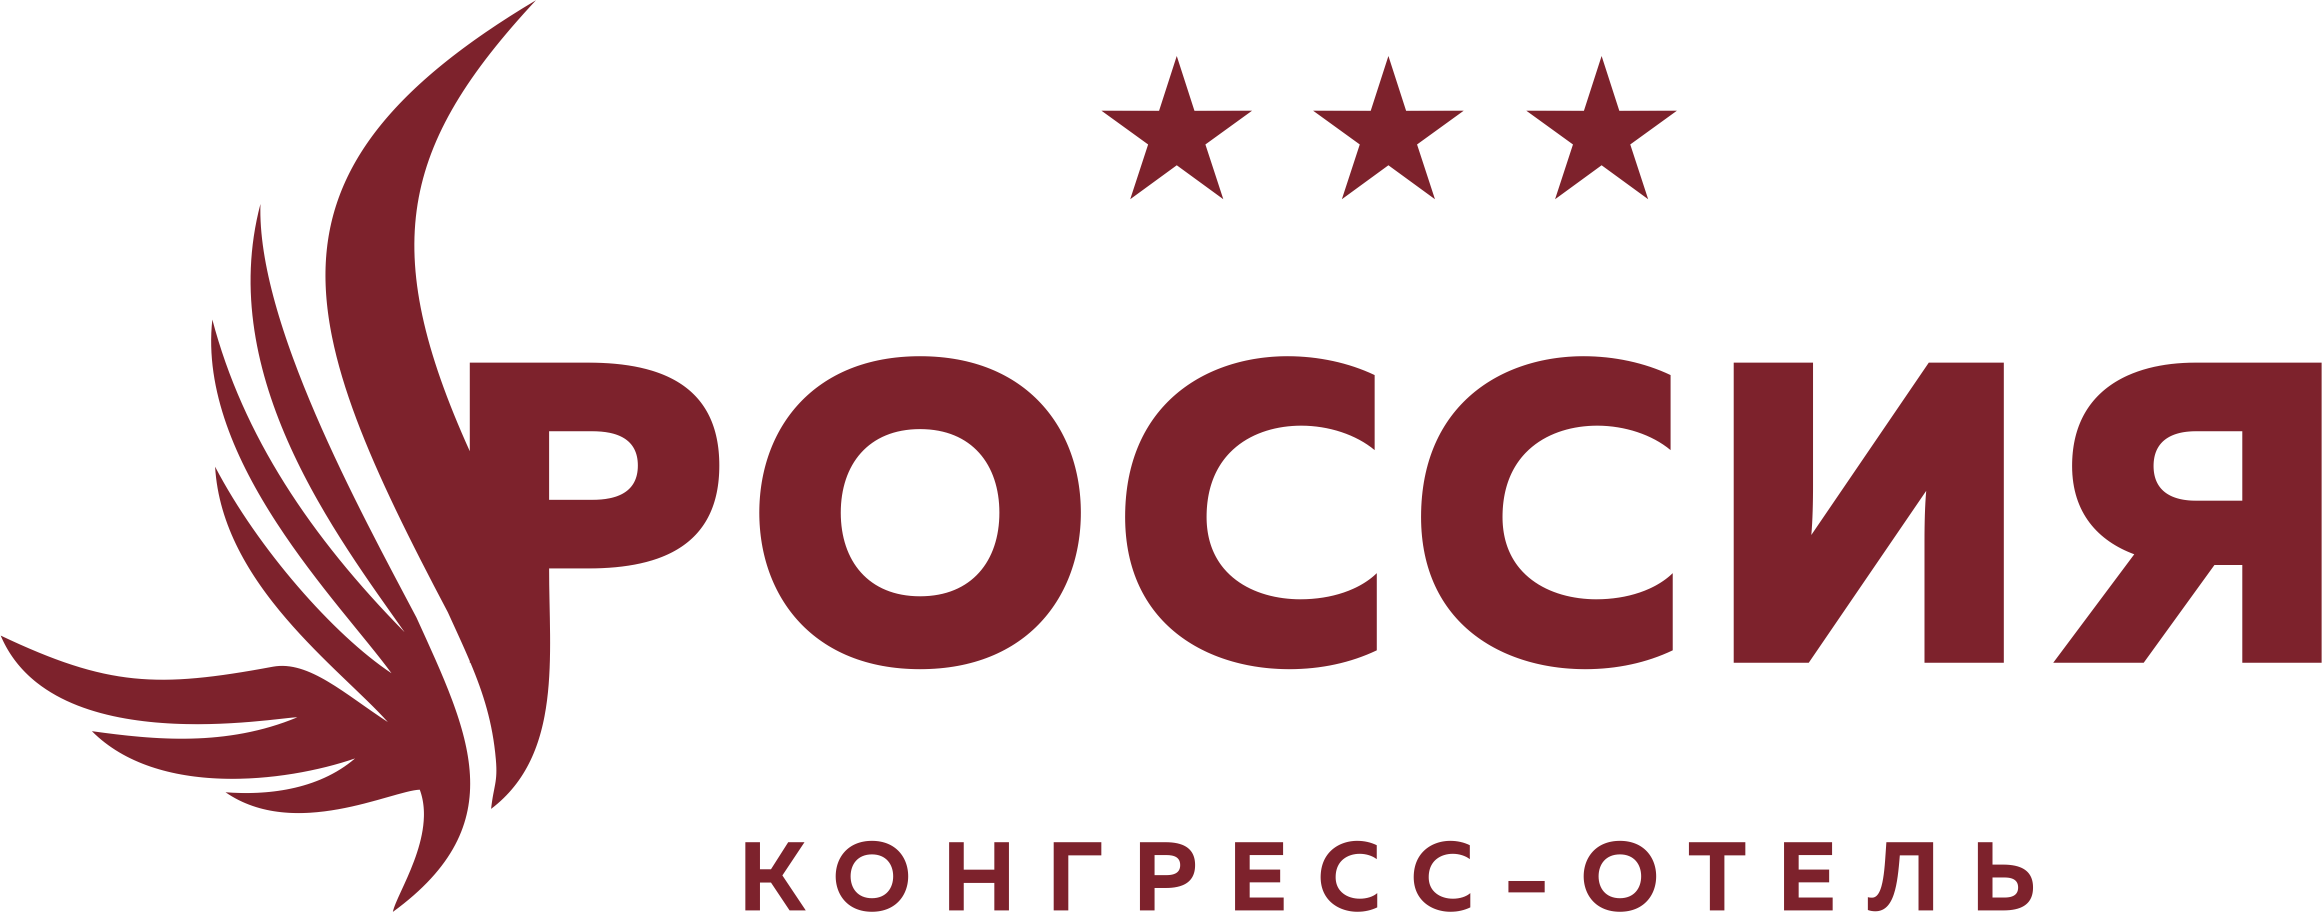 Конгресс-отель «Россия», г. Чебоксары — официальный сайт